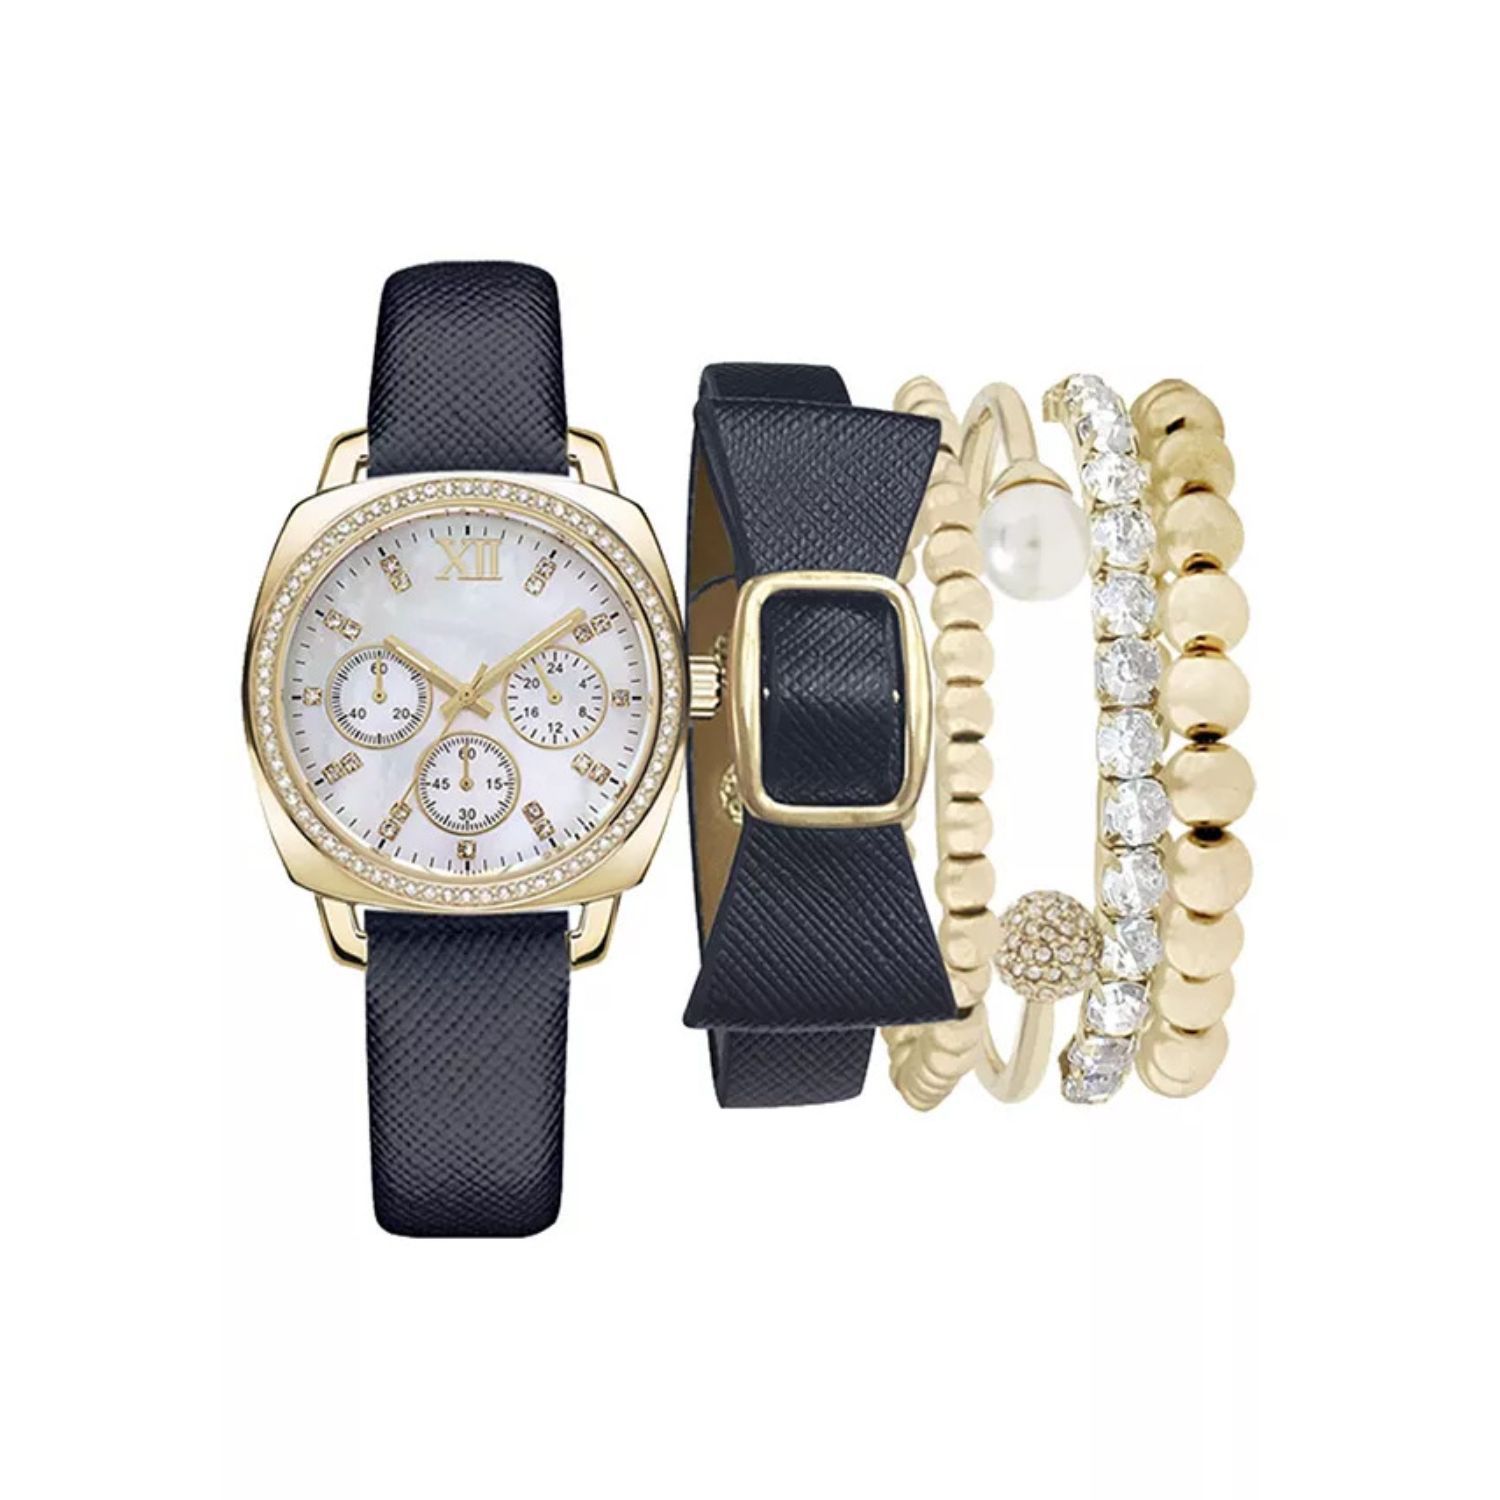 Женские часы-хронограф с темно-синим ремешком и комплект браслетов темно-синего и золотого тонов Jessica Carlyle